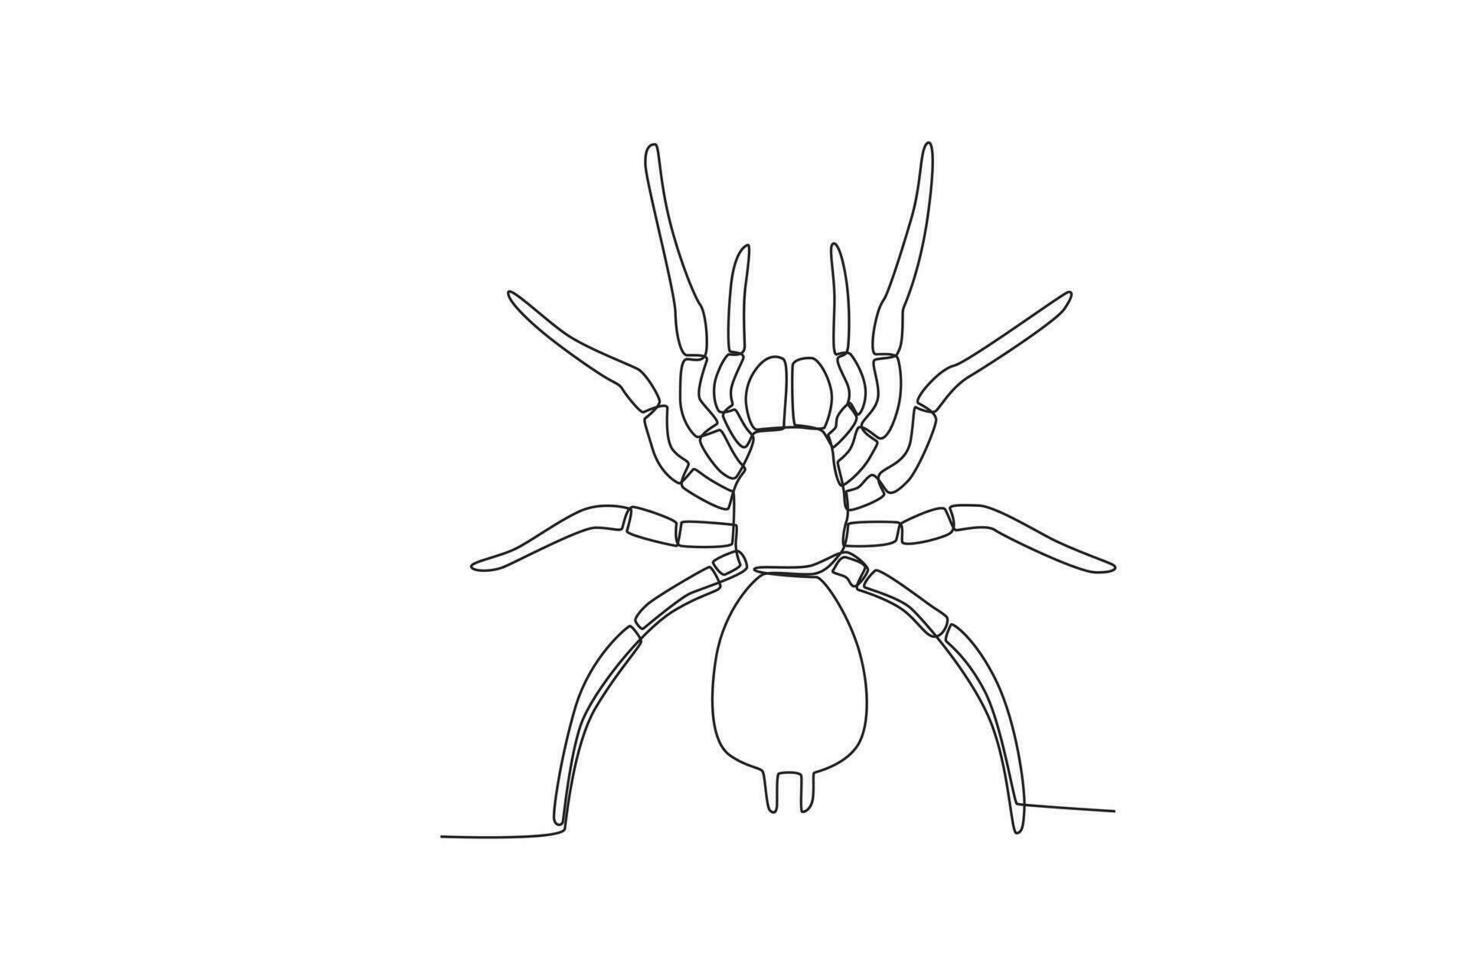 uma solteiro contínuo linha desenhando do a aranha para a da fazenda logotipo identidade. solteiro linha desenhando gráfico Projeto vetor ilustração